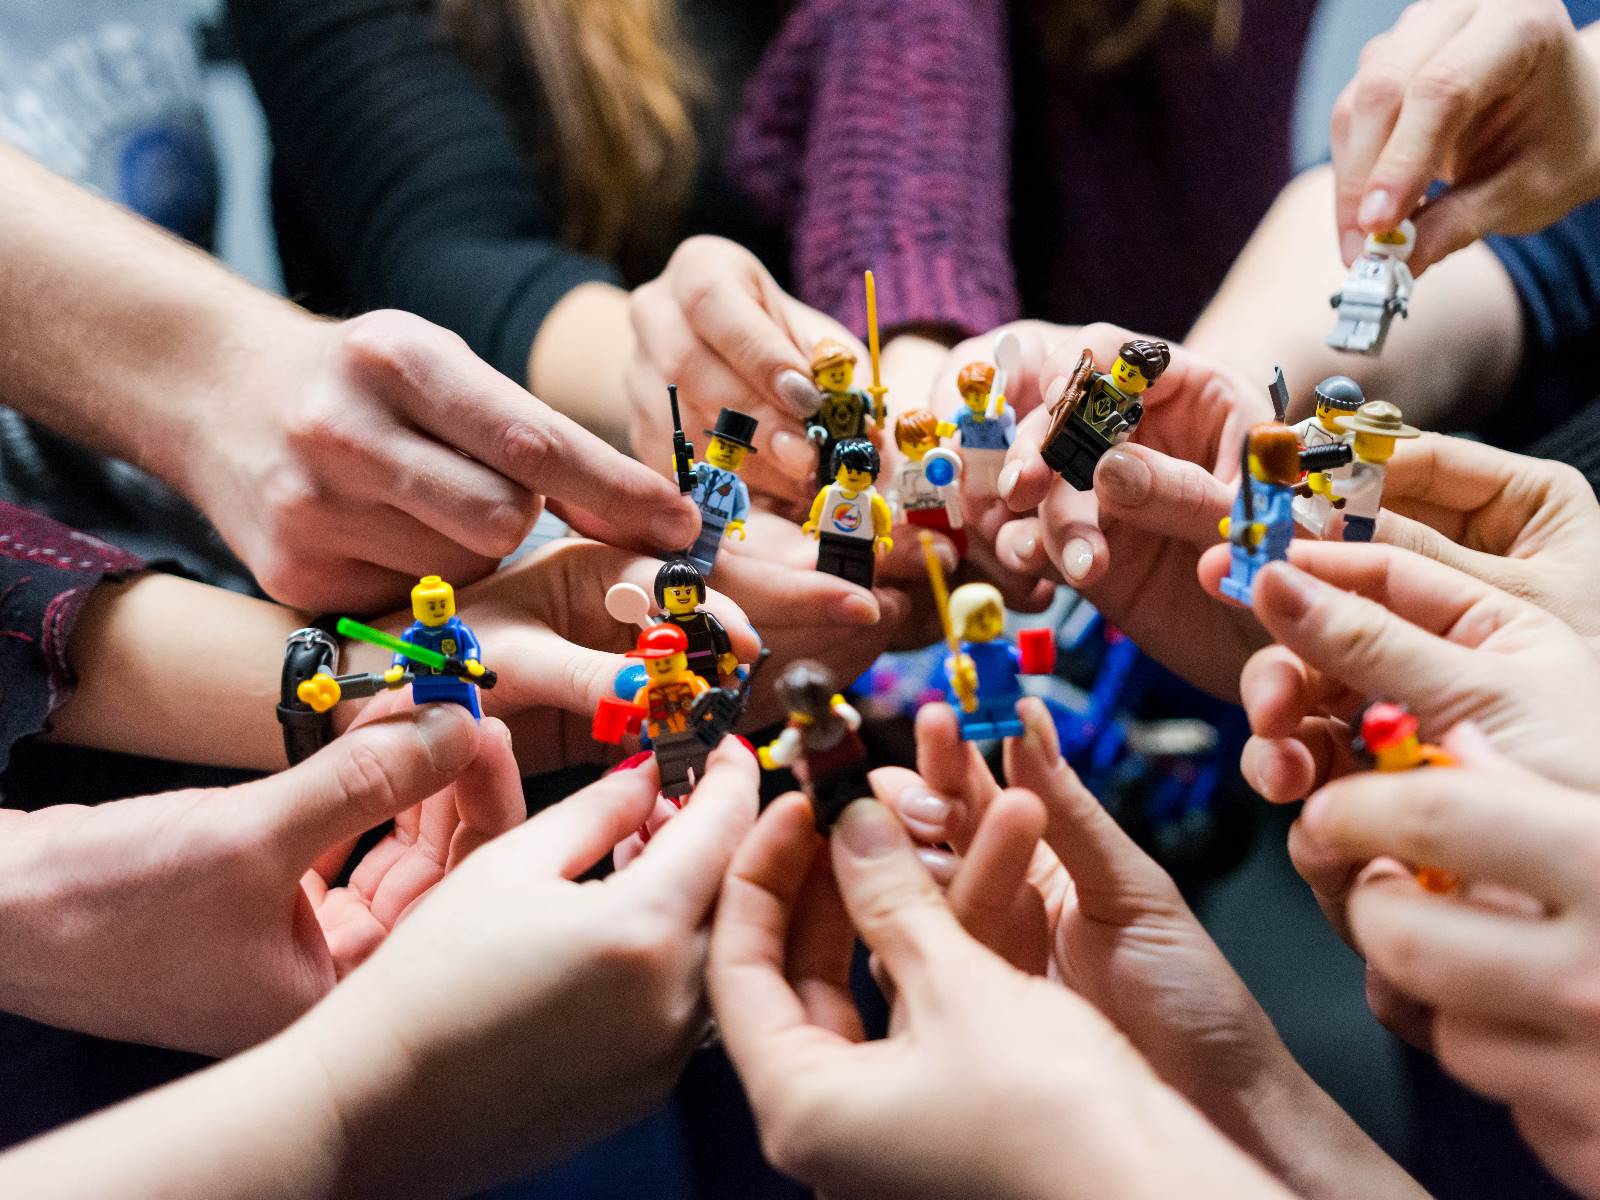 Hände halten Playmobilfiguren, die miteinander "kämpfen"